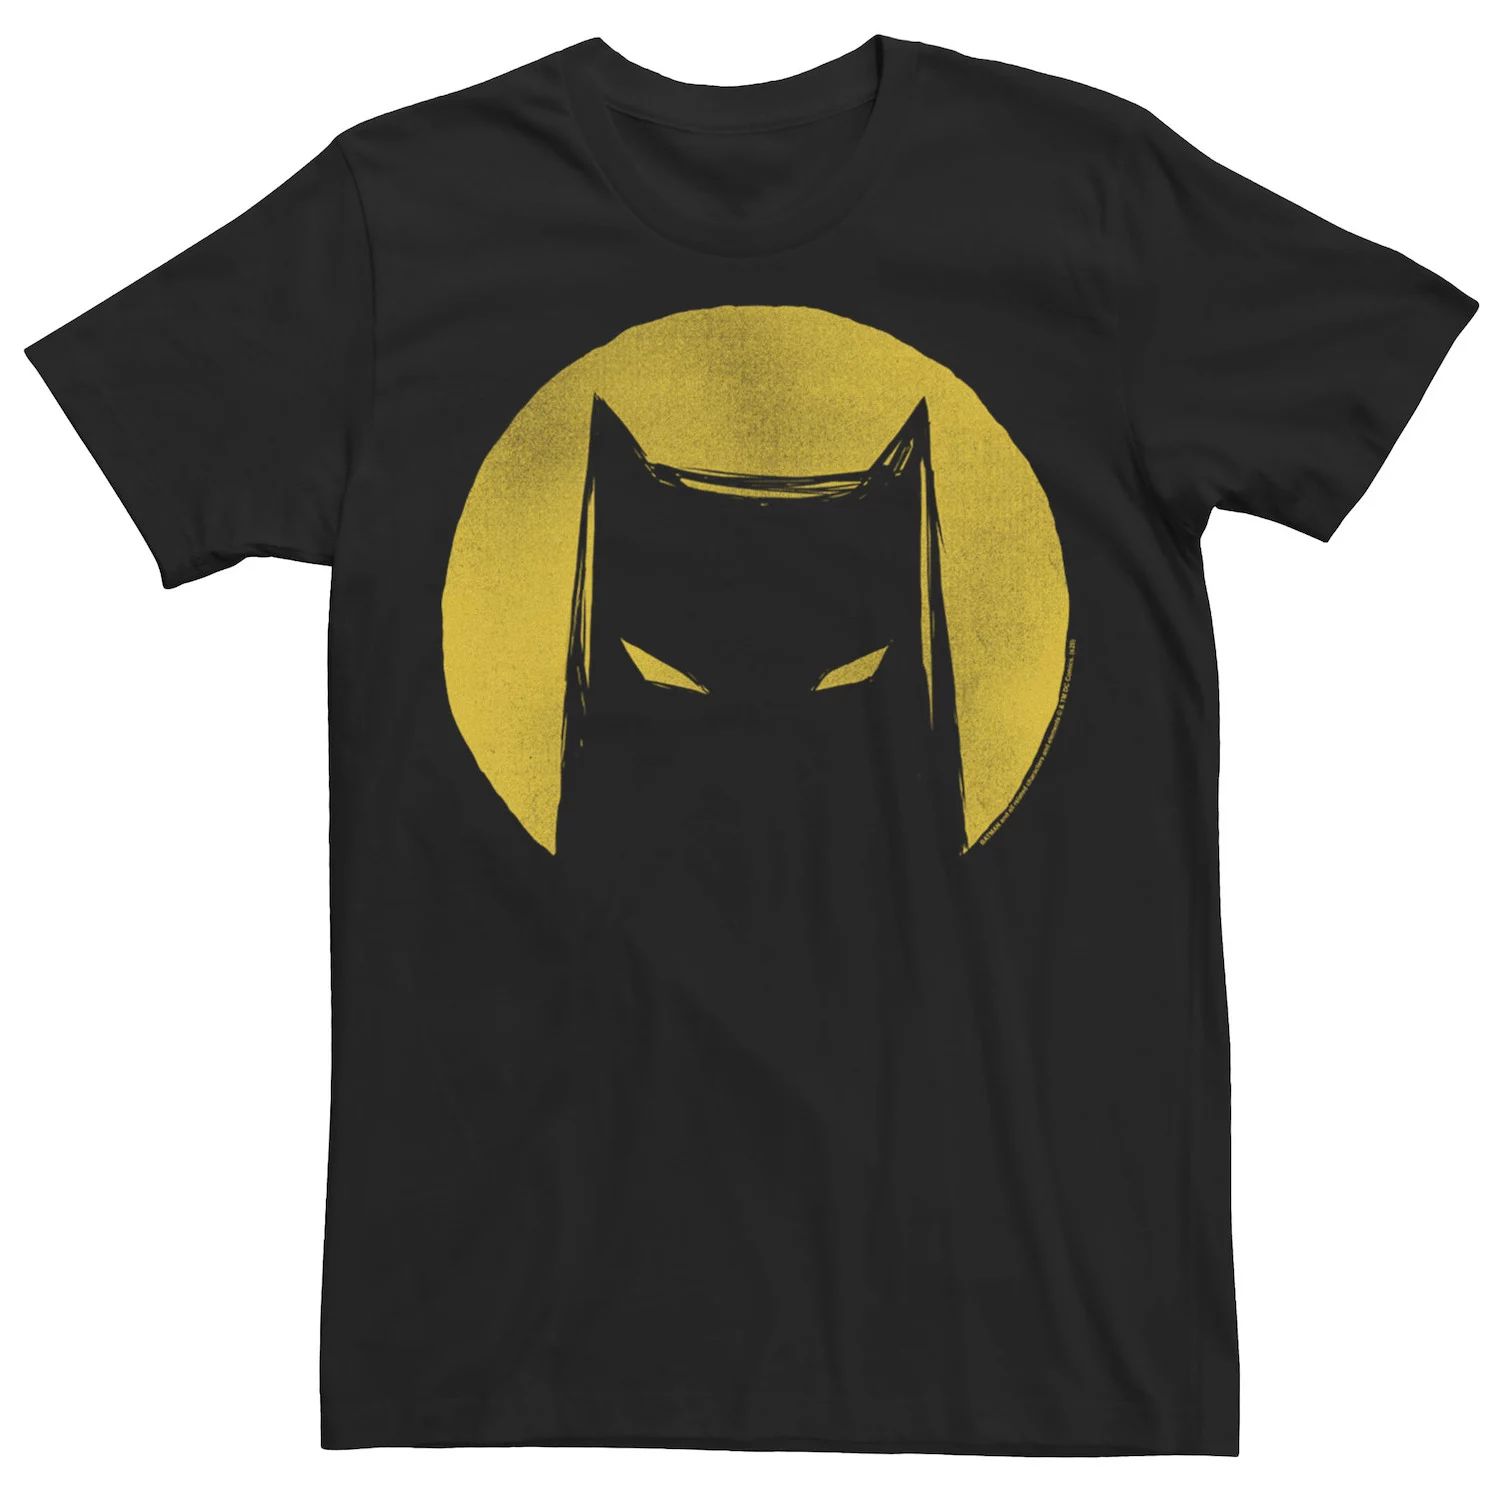 Мужская футболка с силуэтом DC Fandome Batman Moonlight Licensed Character